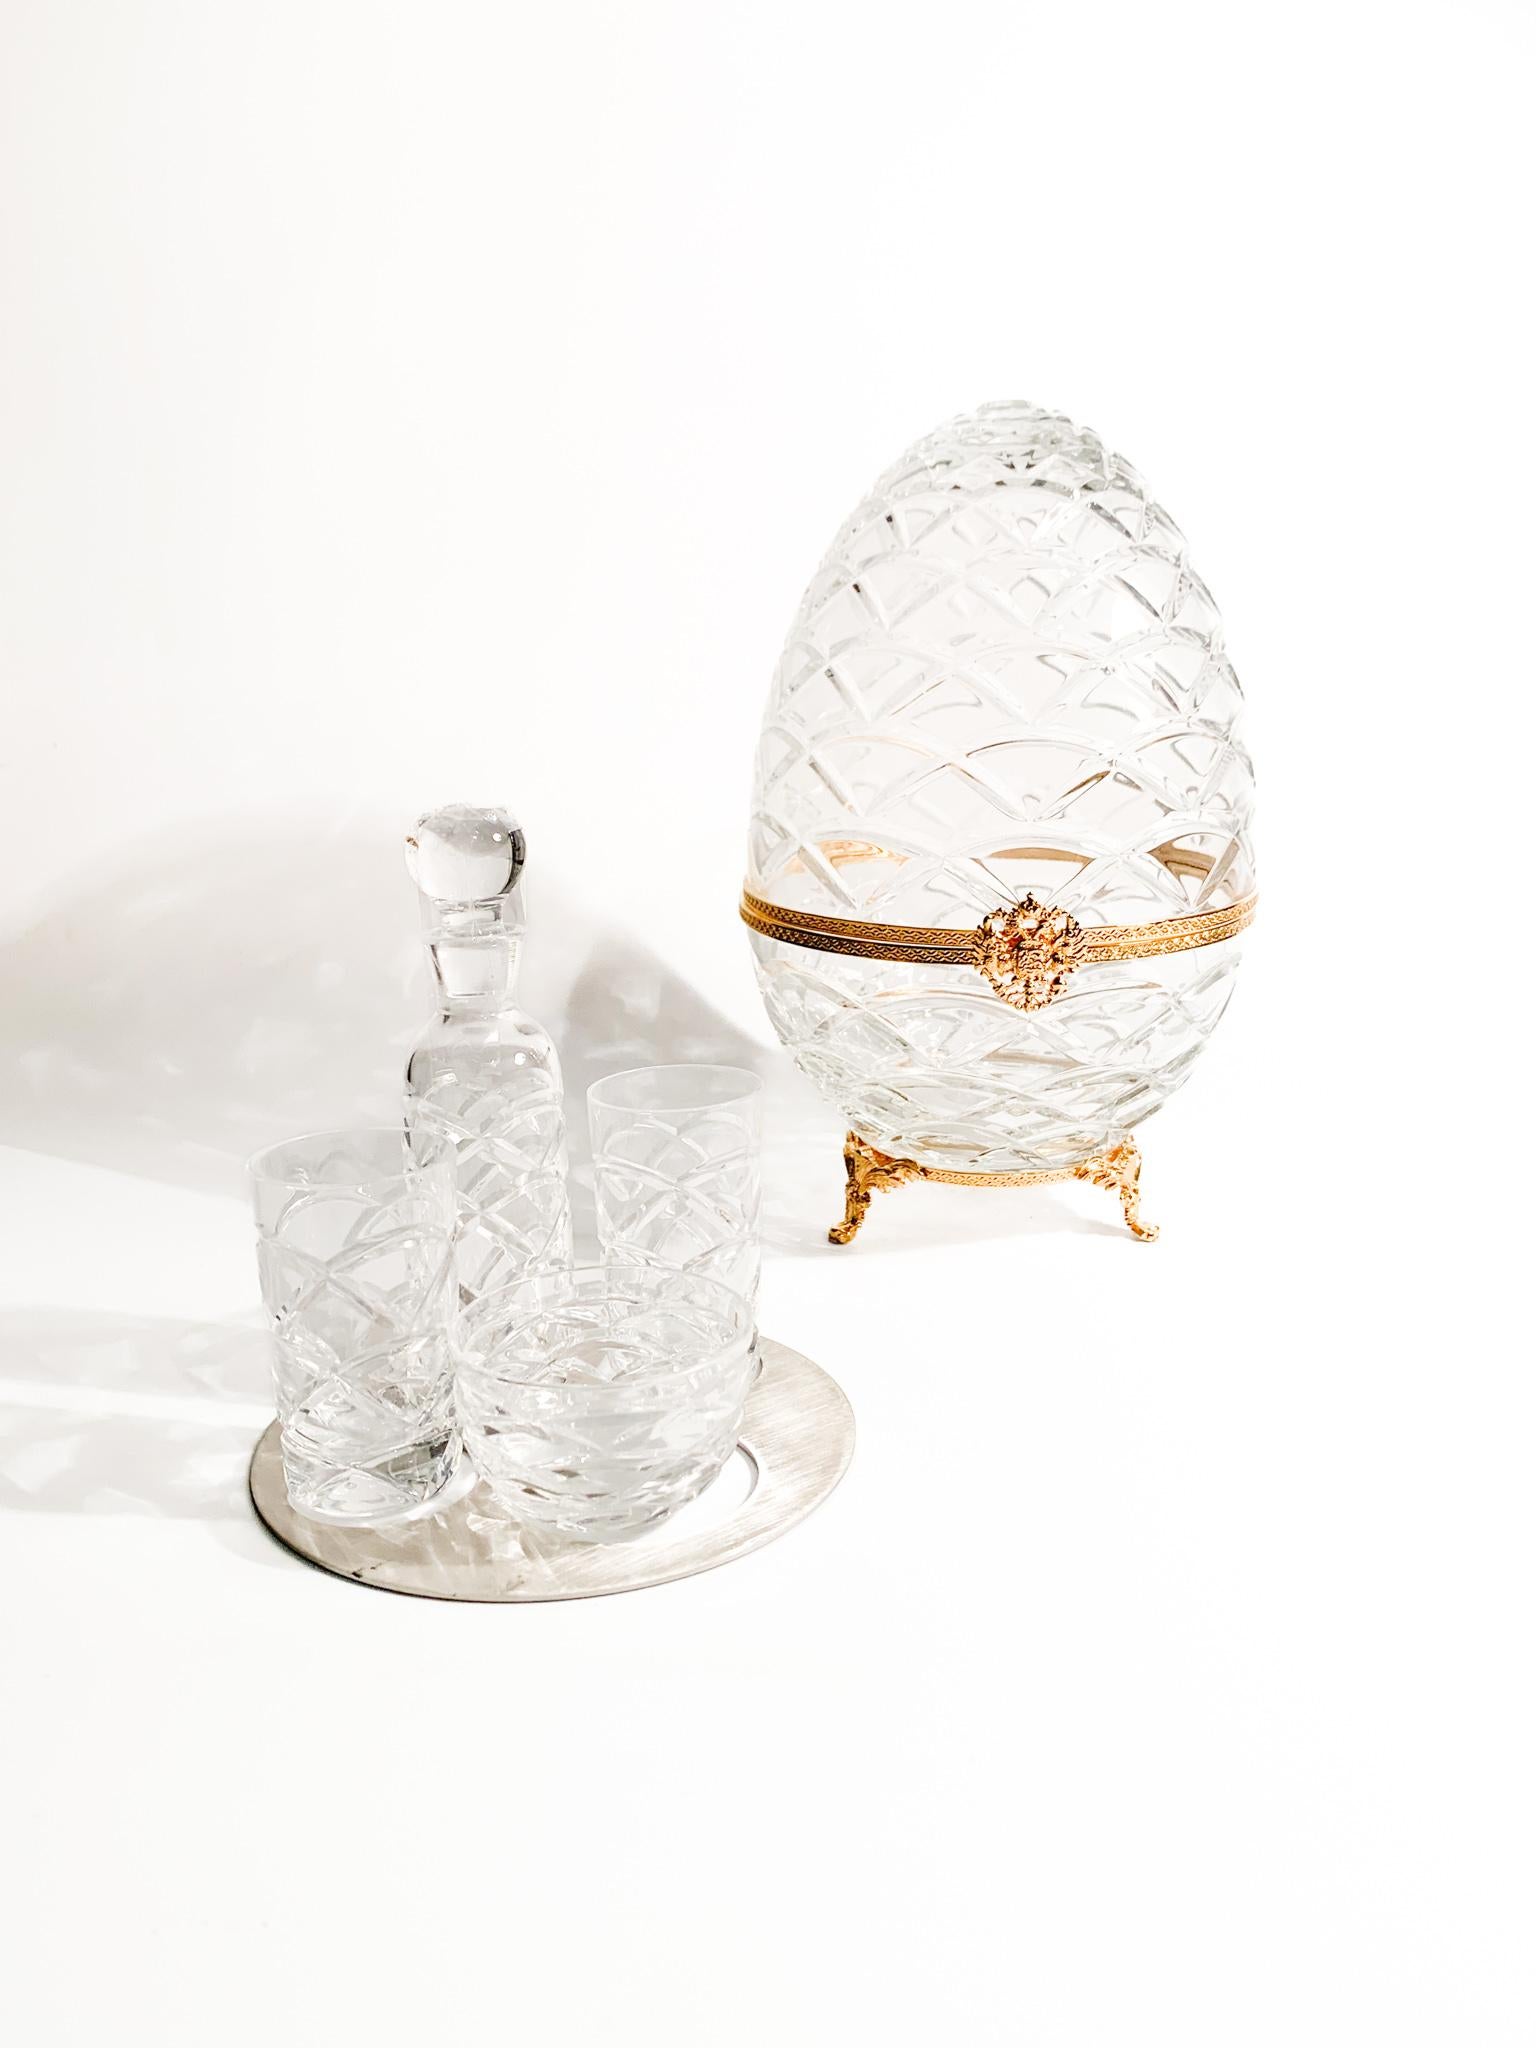 Service de vodka impériale et de caviar en cristal de Fabergé. Le coffret comprend une nouvelle Faberge, deux verres à vodka, un bol à caviar et une bouteille. Il comprend une boîte.

Œuf - Ø 15 cm h 25 cm 

Fabergé fait référence à la célèbre